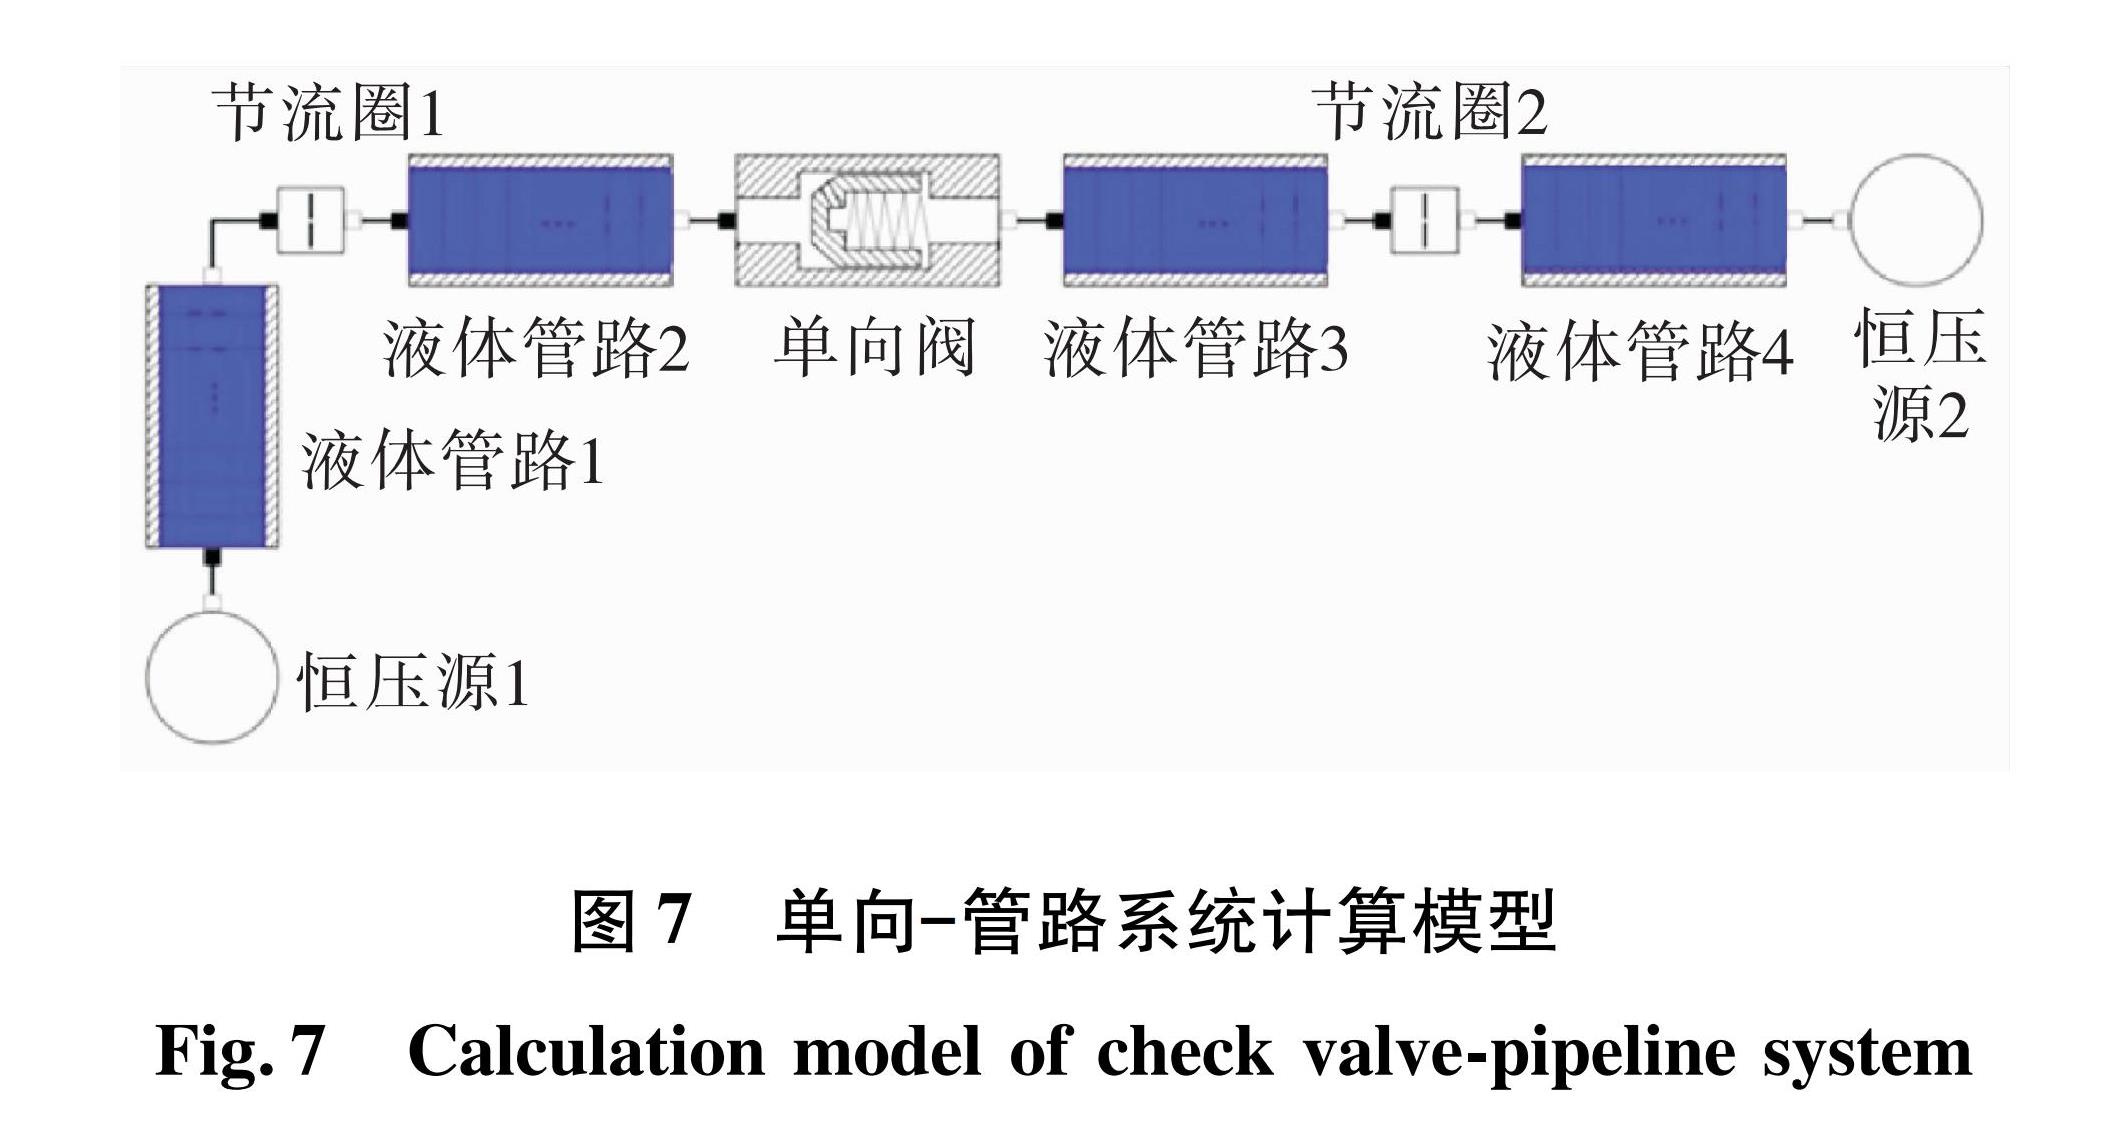 图7 单向—管路系统计算模型<br/>Fig.7 Calculation model of check valve-pipeline system